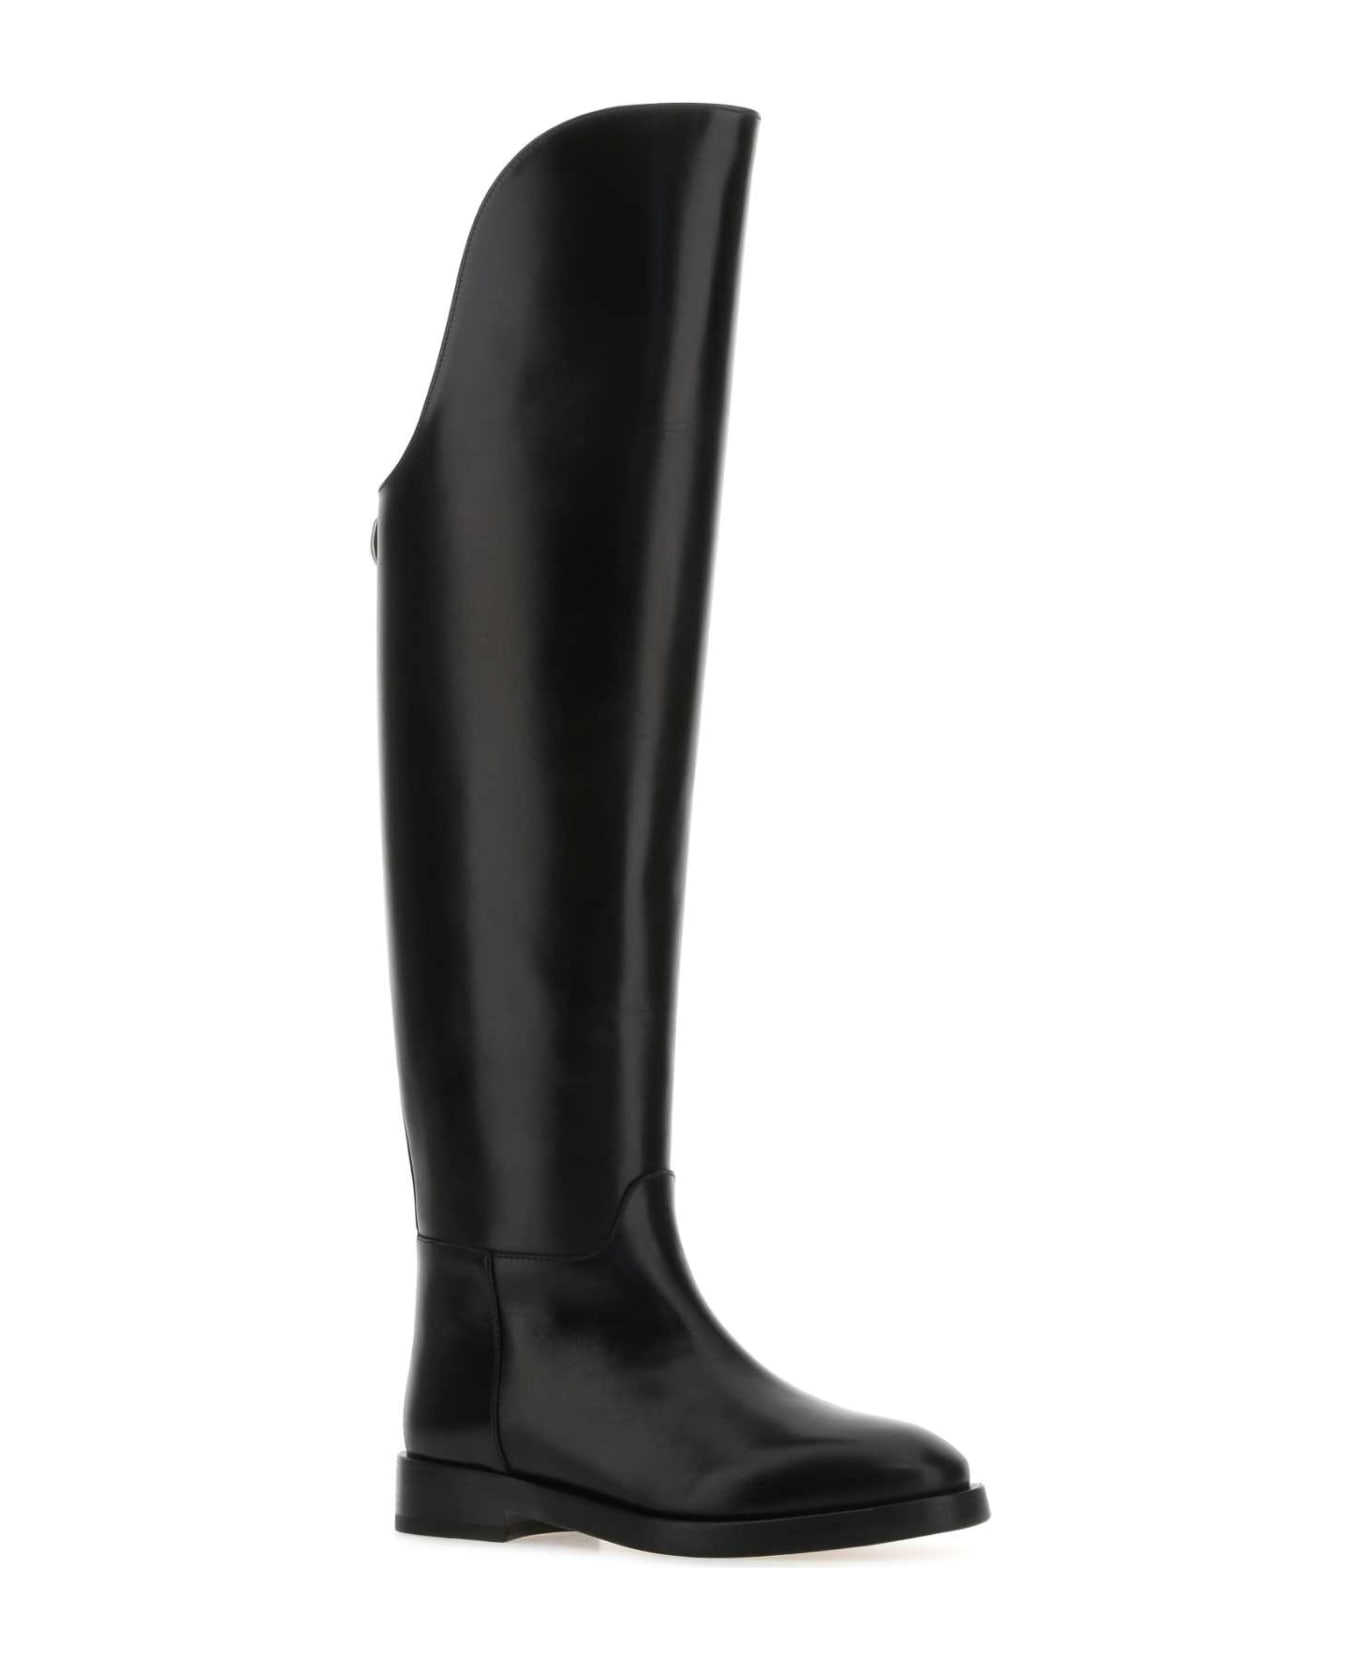 Durazzi Milano Black Leather Equestrian Boots - BLACK ブーツ